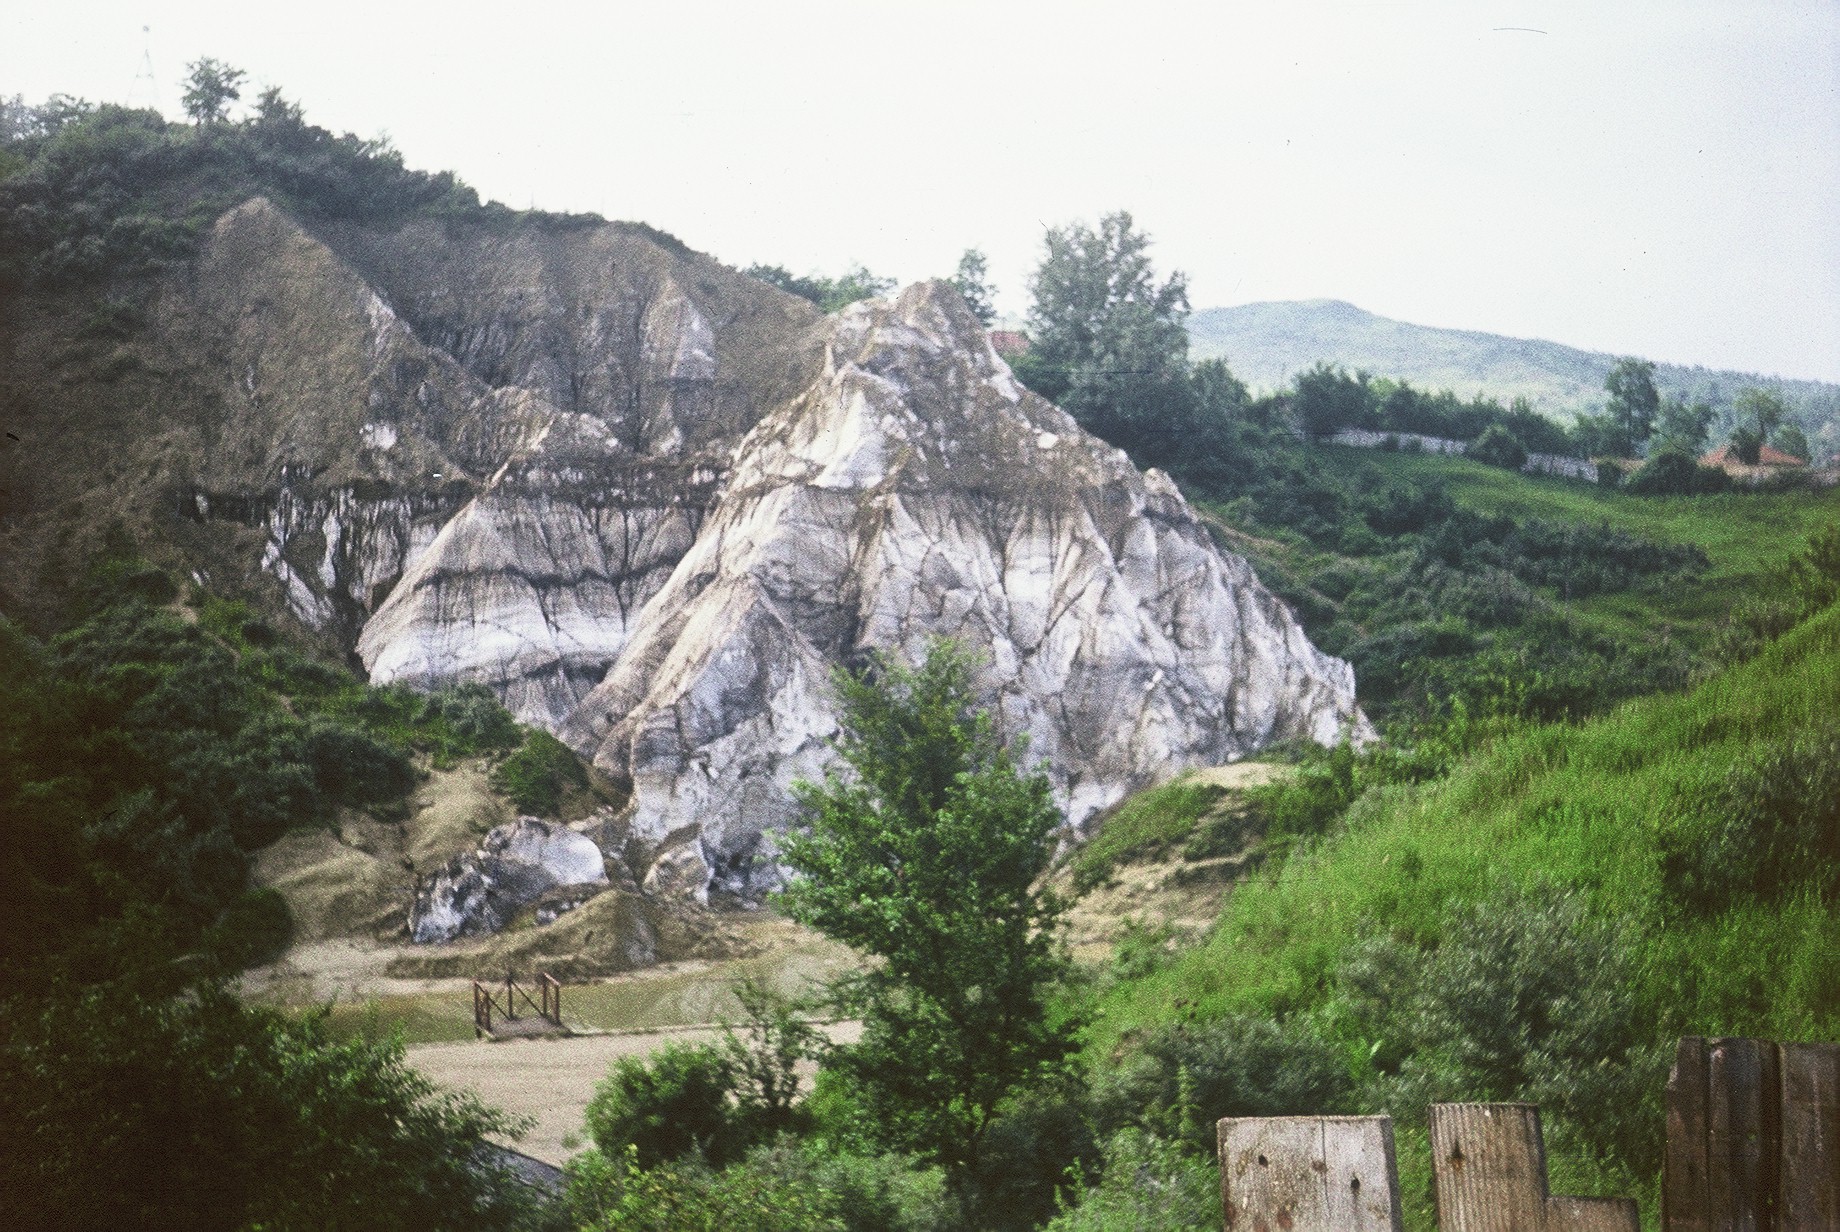 Muntele de sare de la Slanic Prahova